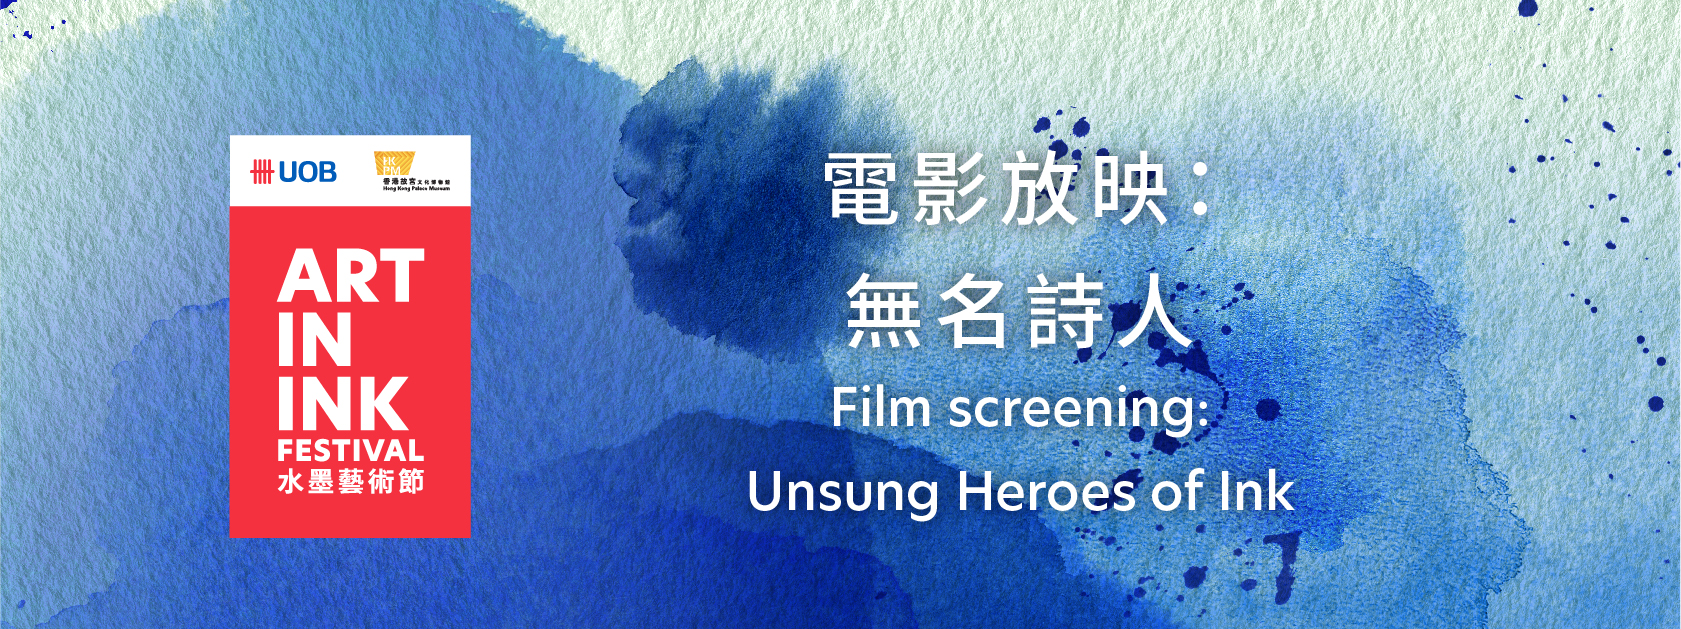 Film Screening: Unsung Heroes of Ink